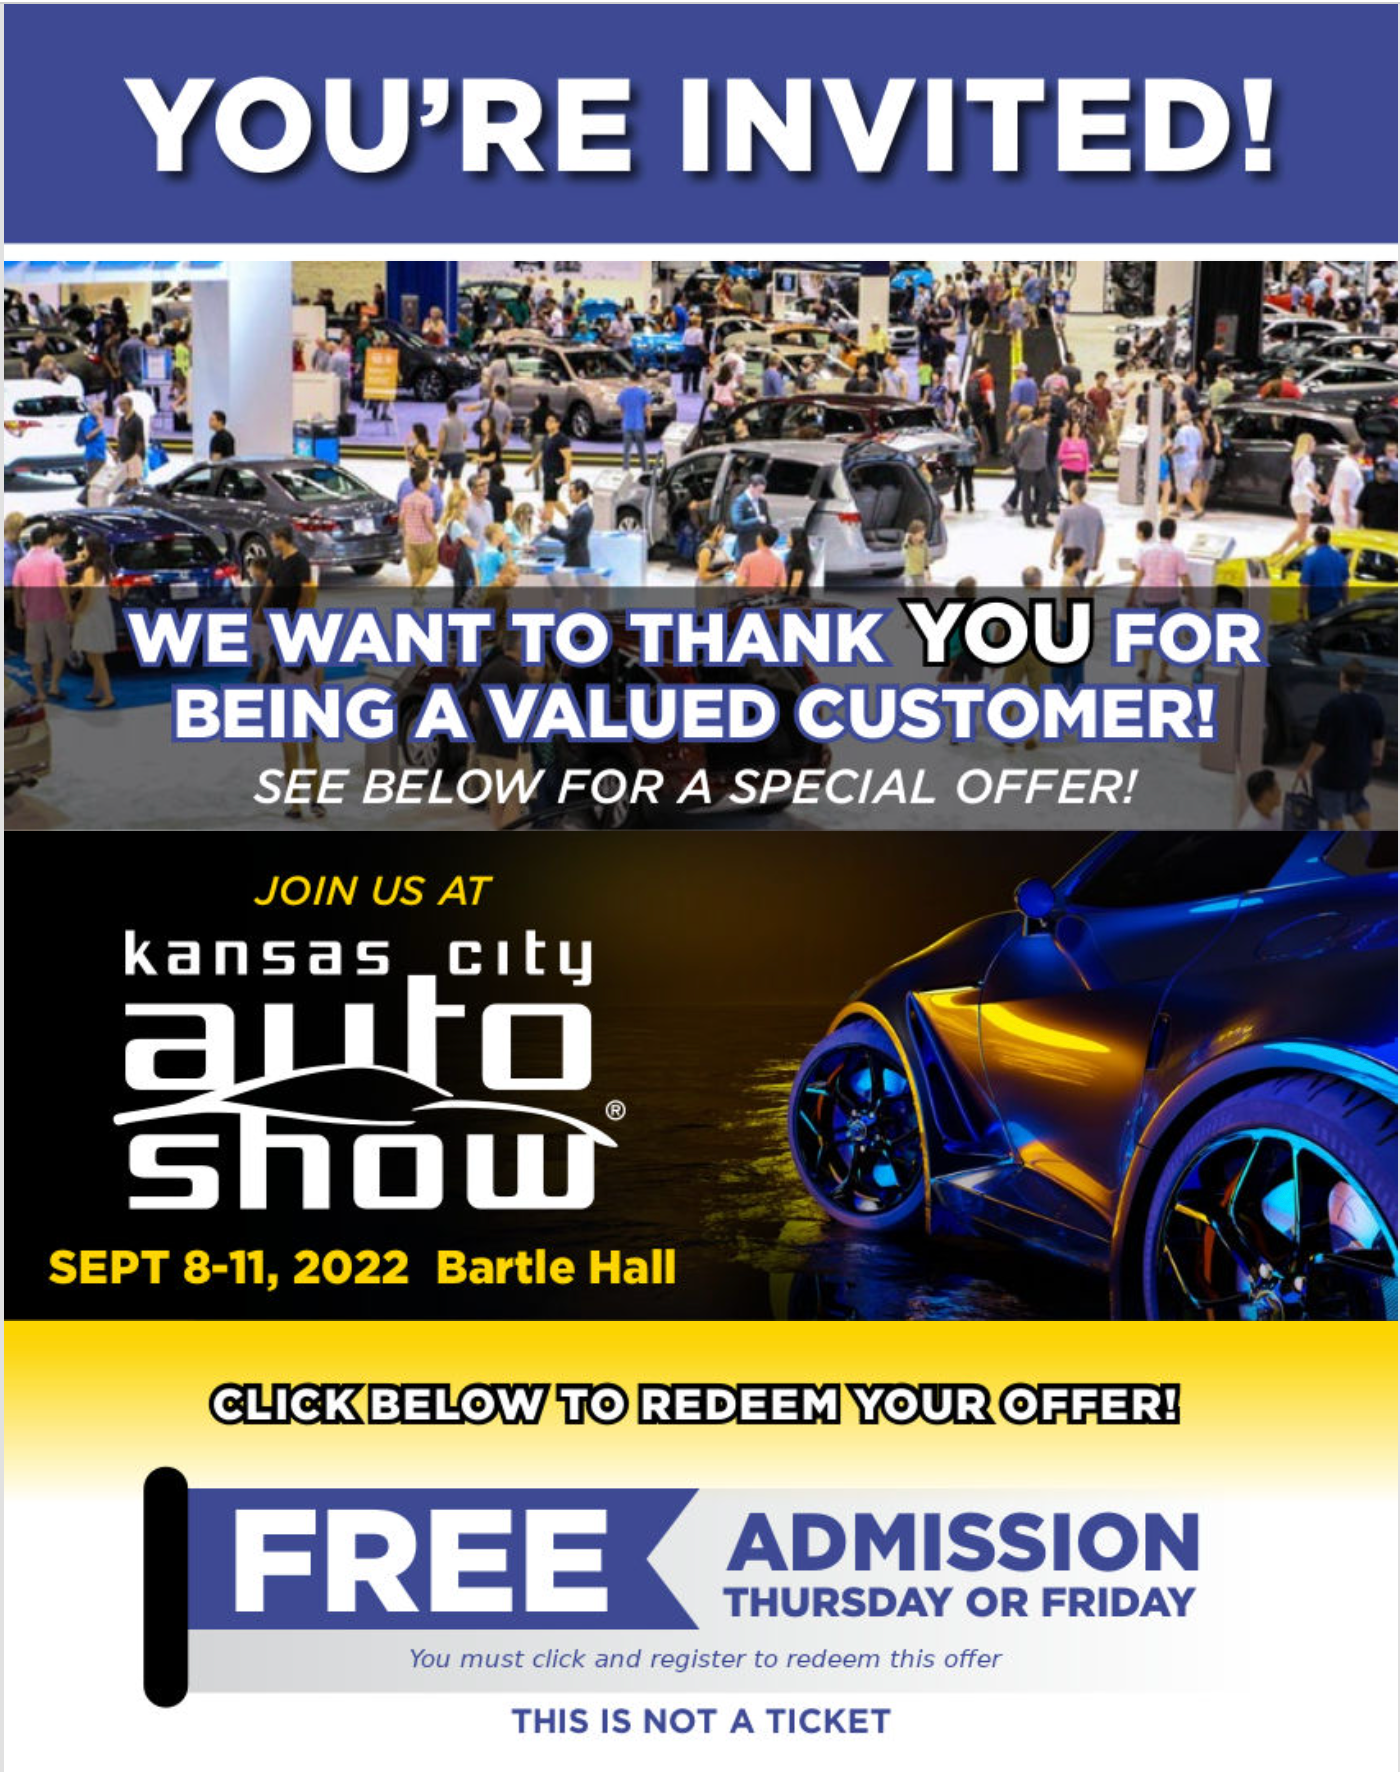 Kansas City Auto Show Tickets at Bob Sight Ford